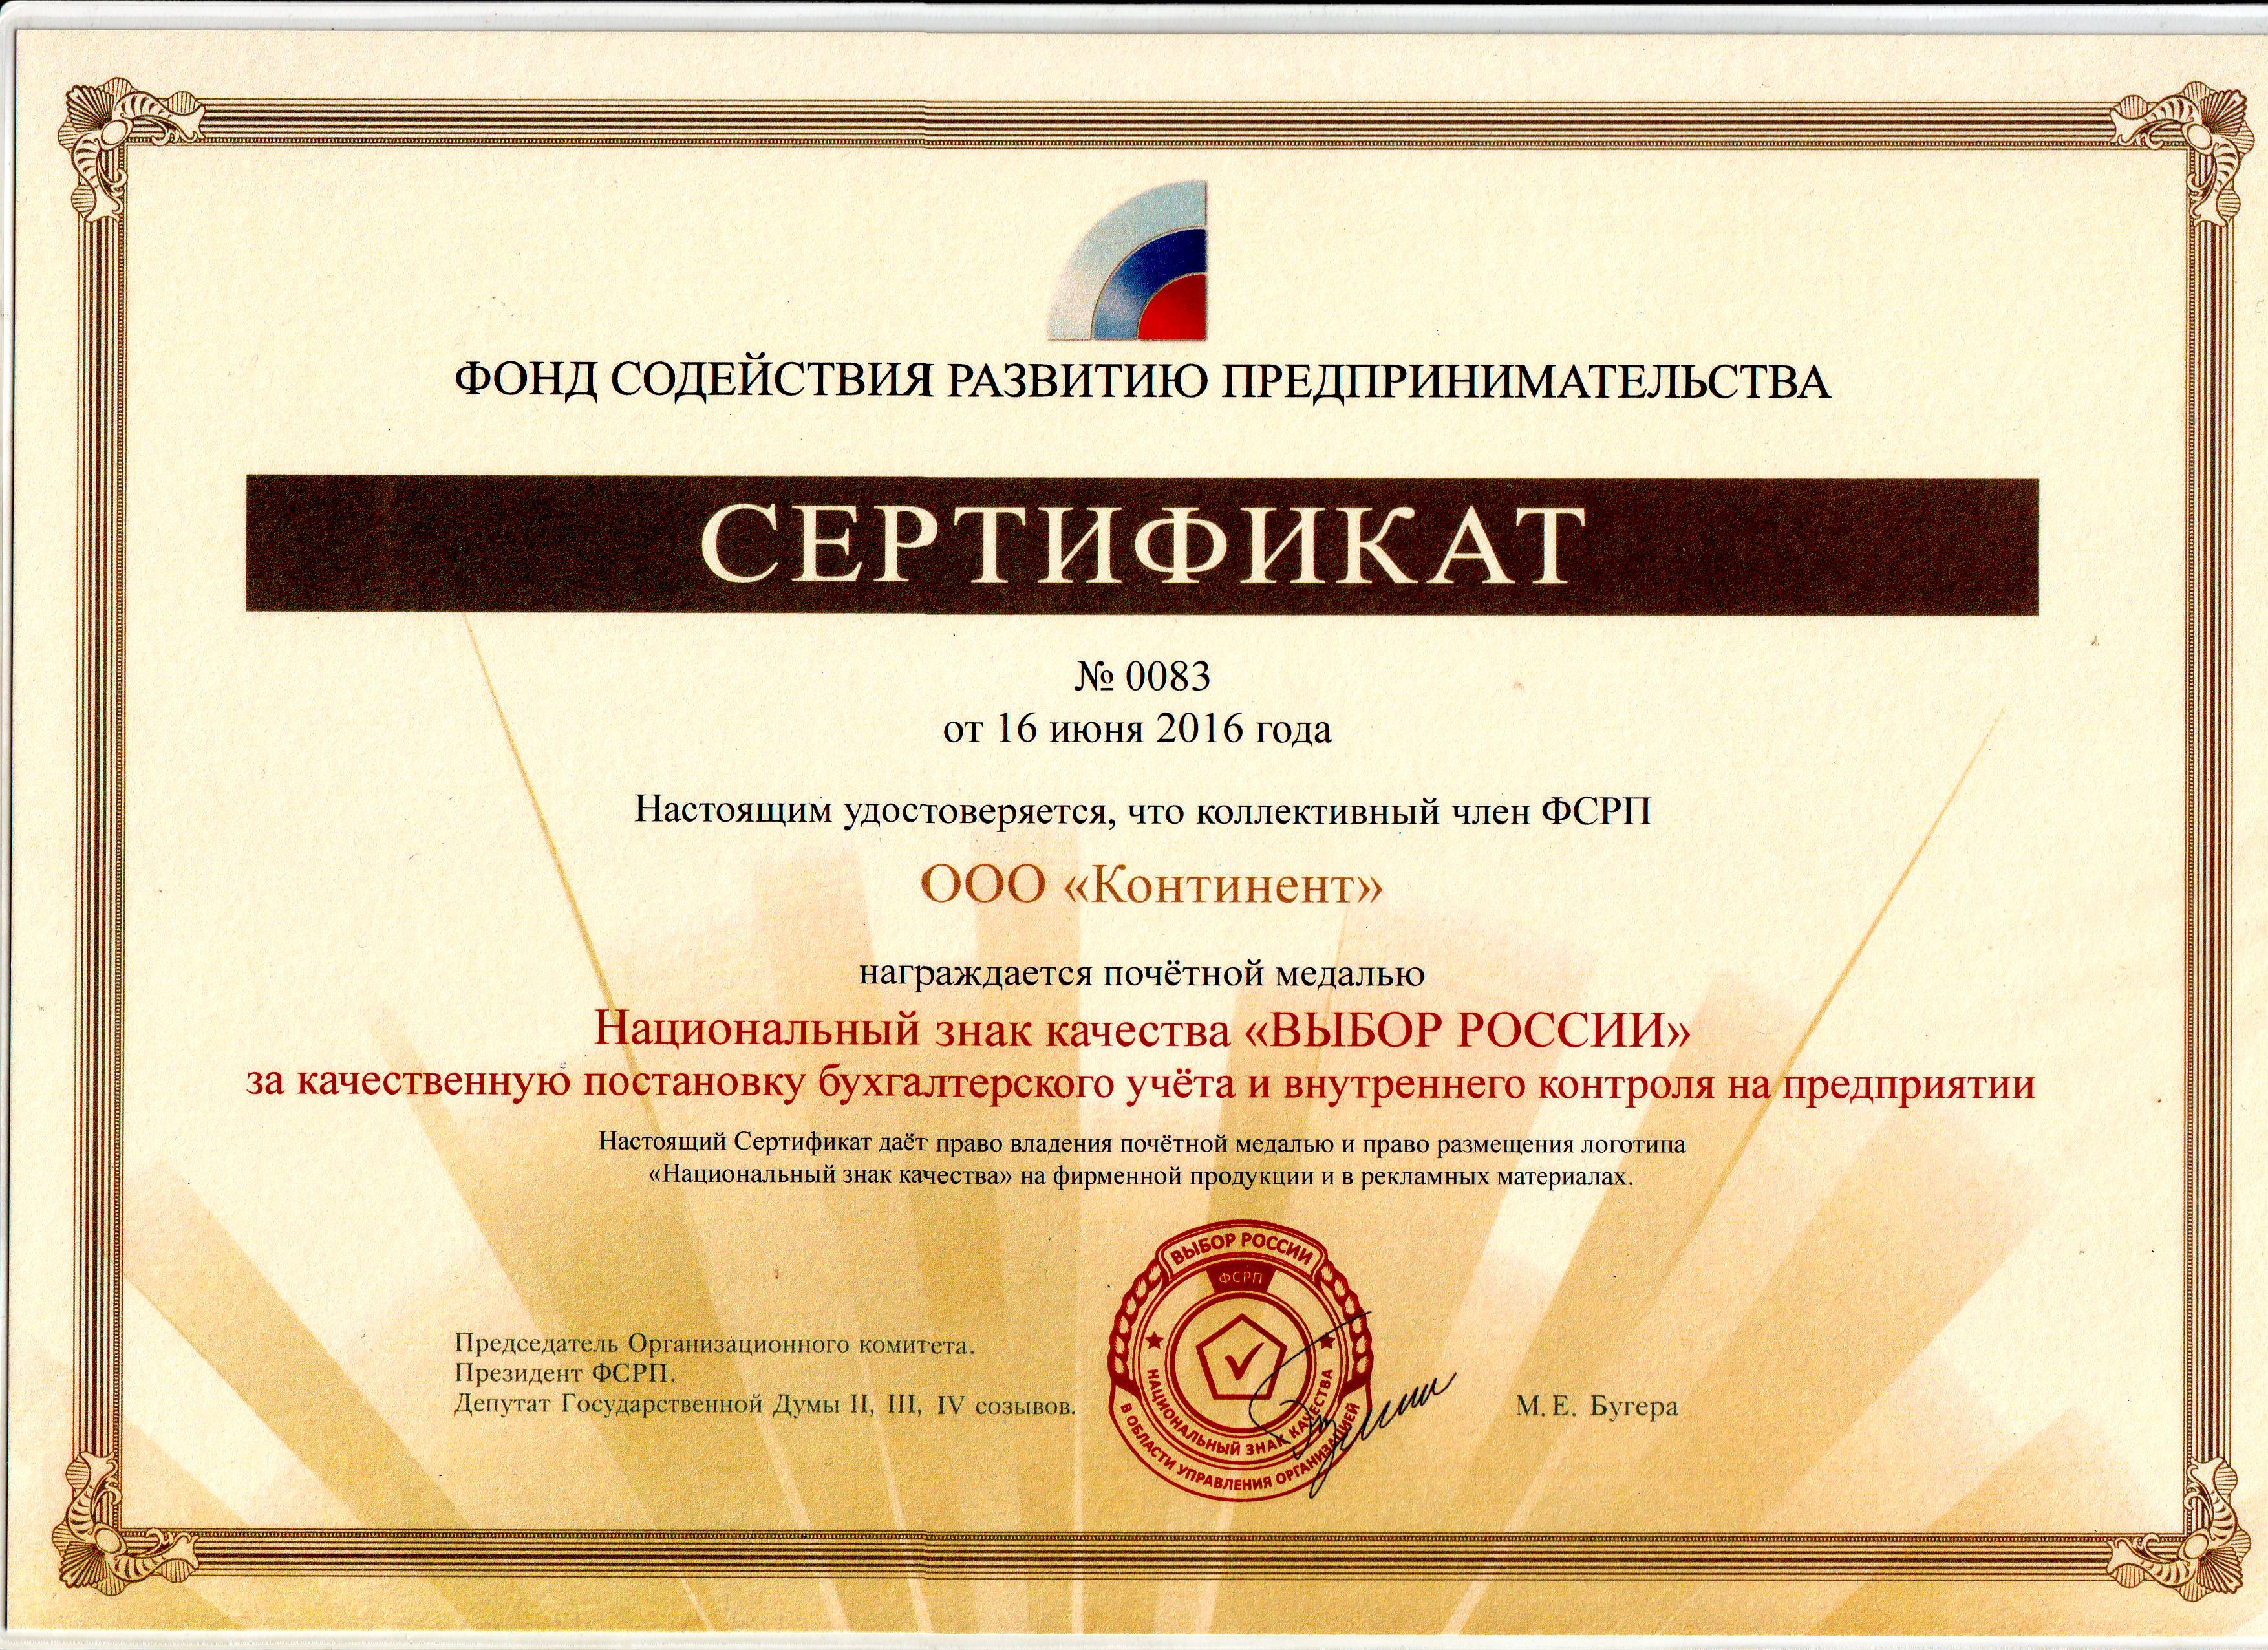 Сертификат ФСРП о получении национального знака качества "ВЫБОР РОССИИ" за качественную постановку бухгалтерского учета и внутреннего контроля на предприятии.  